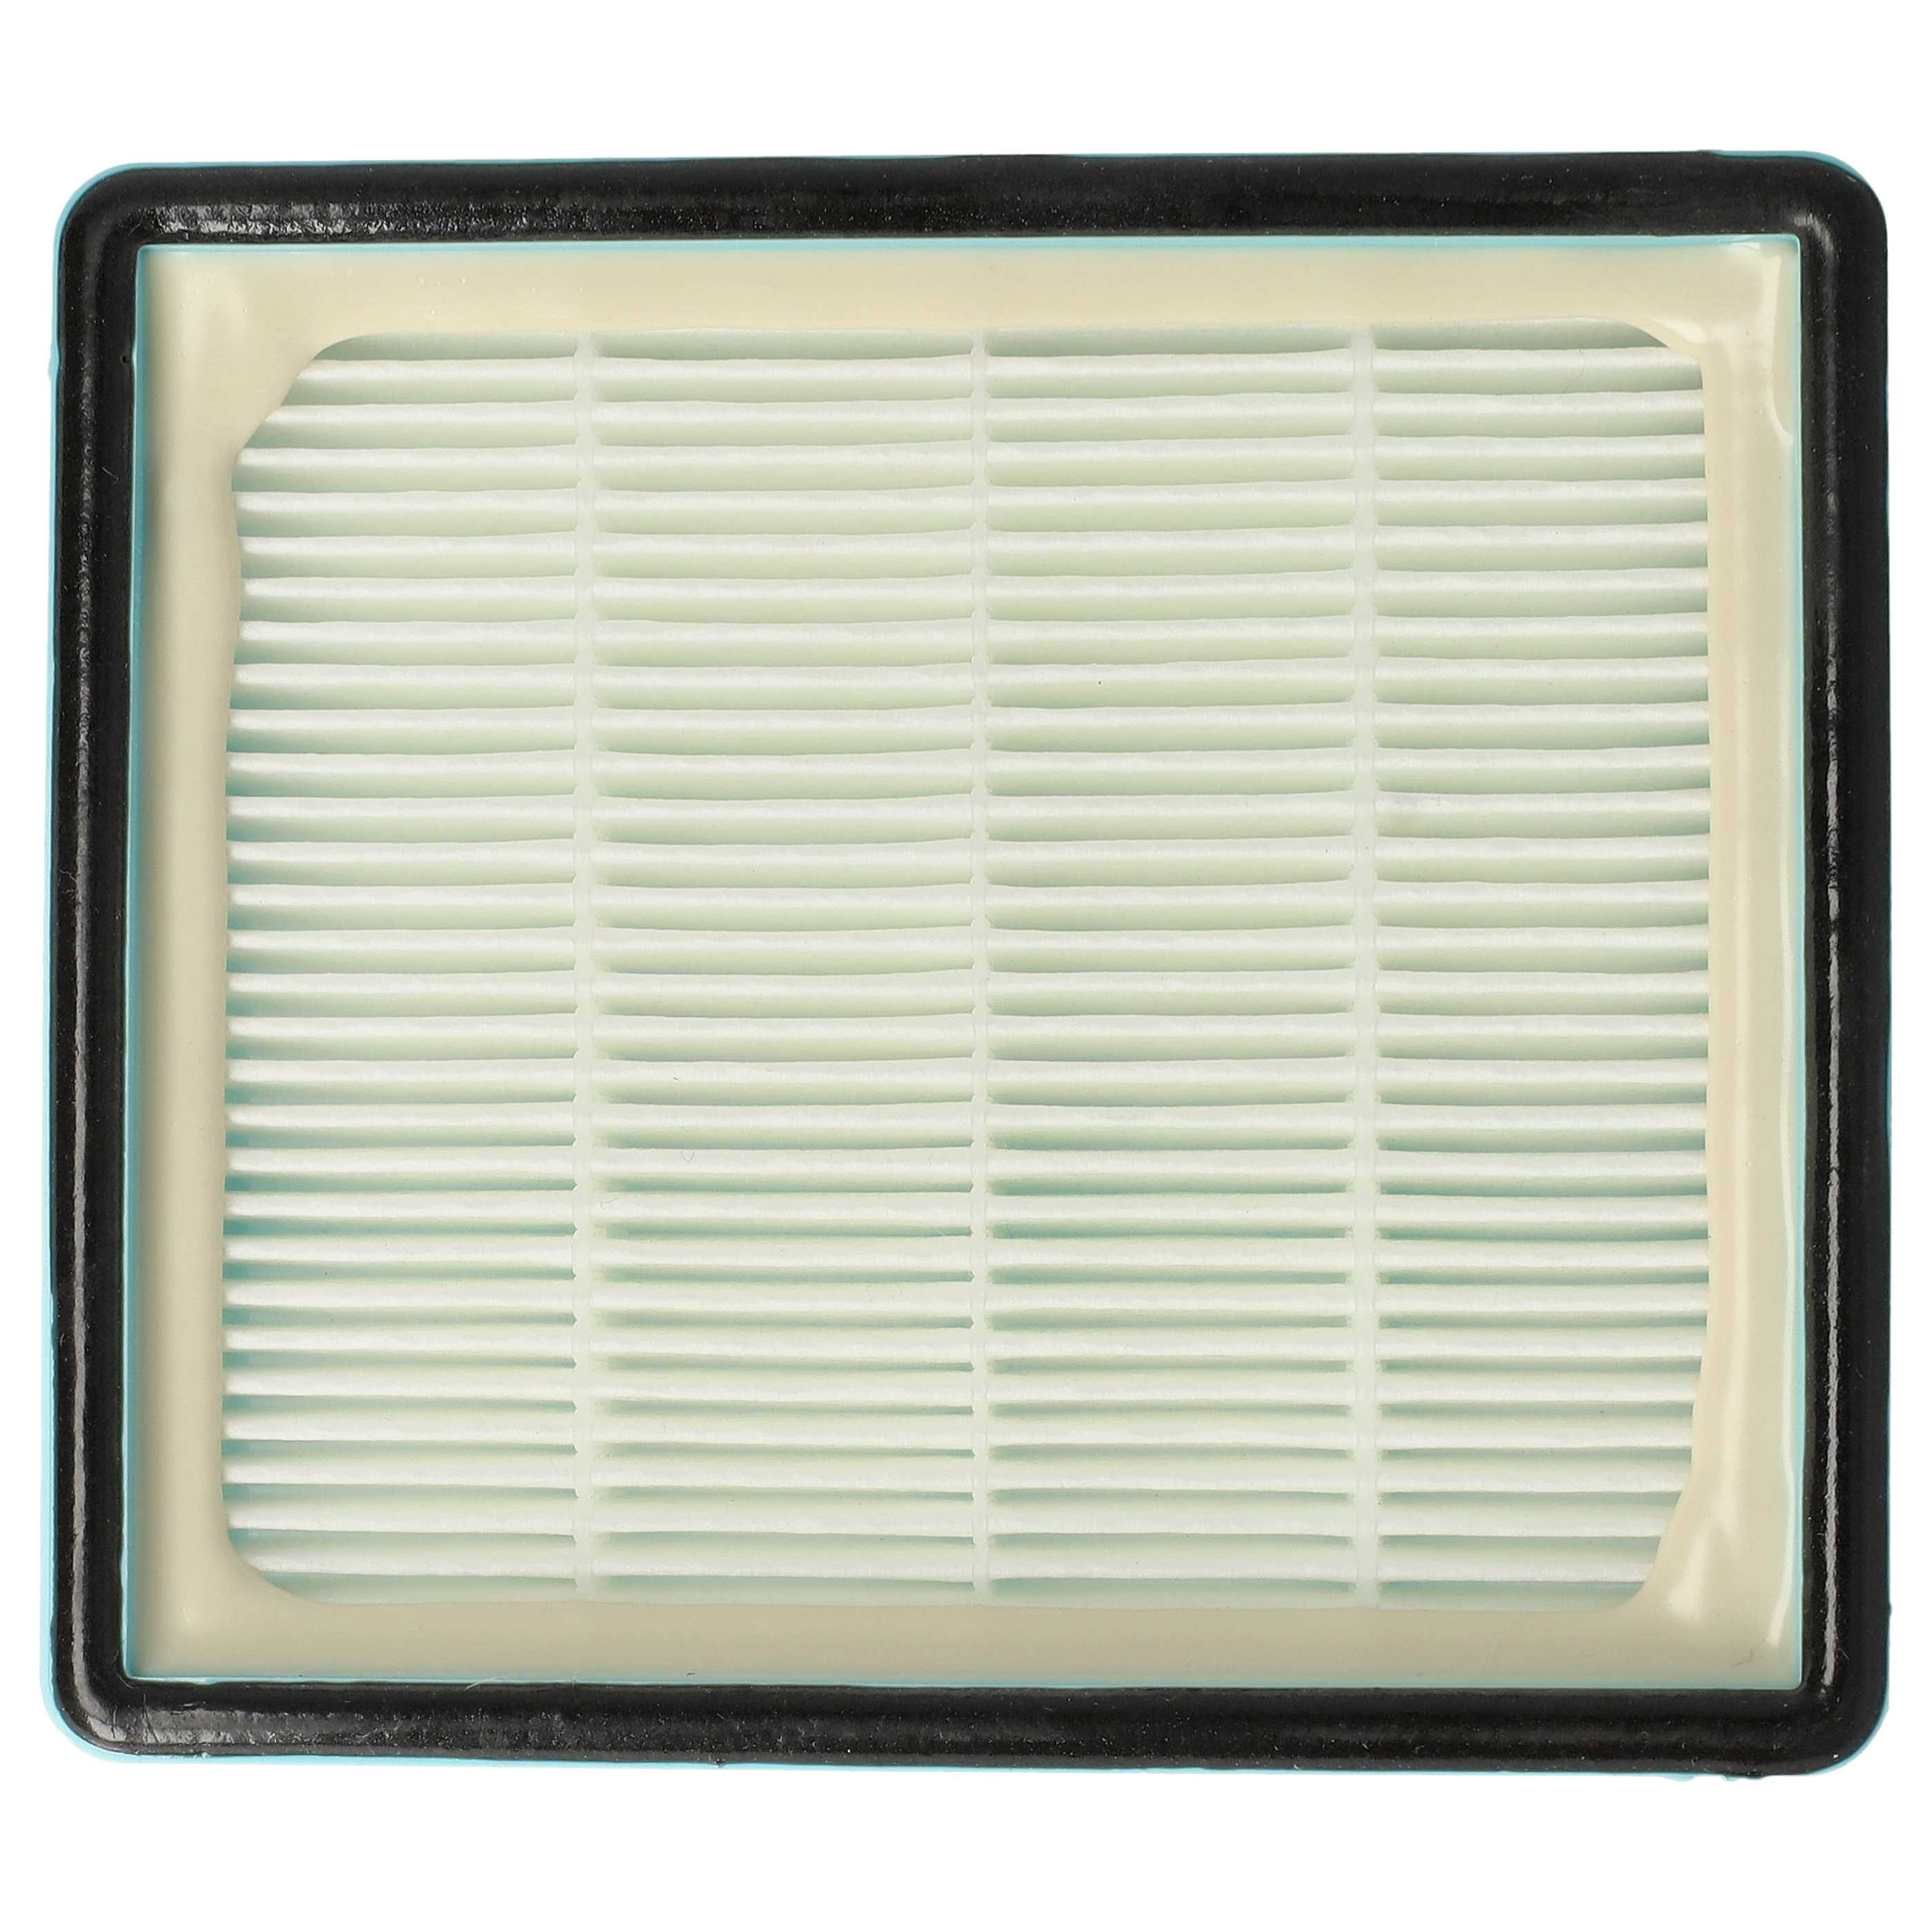 Filtre remplace Philips CRP495, CP0259/01, 432200493941 pour aspirateur - filtre HEPA